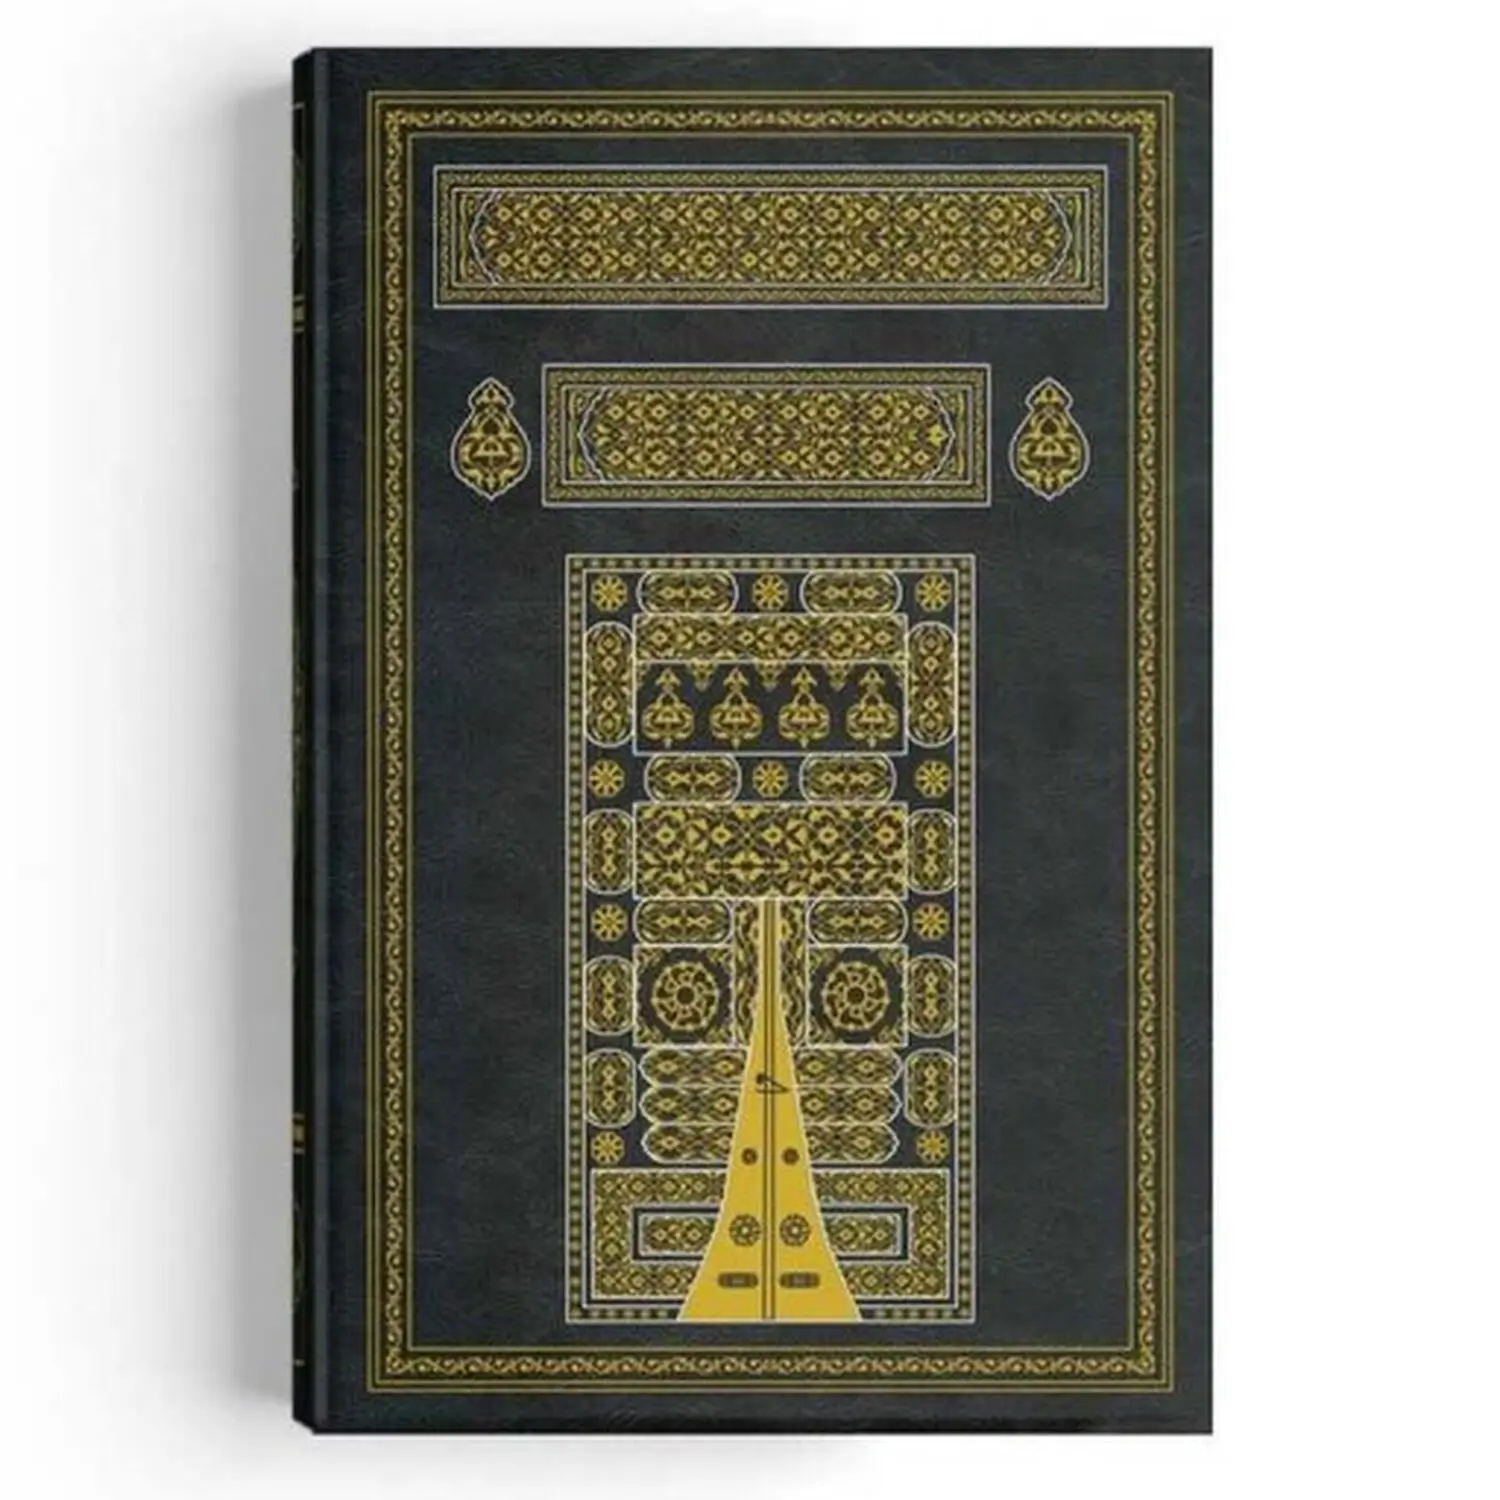 カバカバー付きの神聖なquran、読みやすい、印刷された宗教的なブック、レーザーサイズ、2色